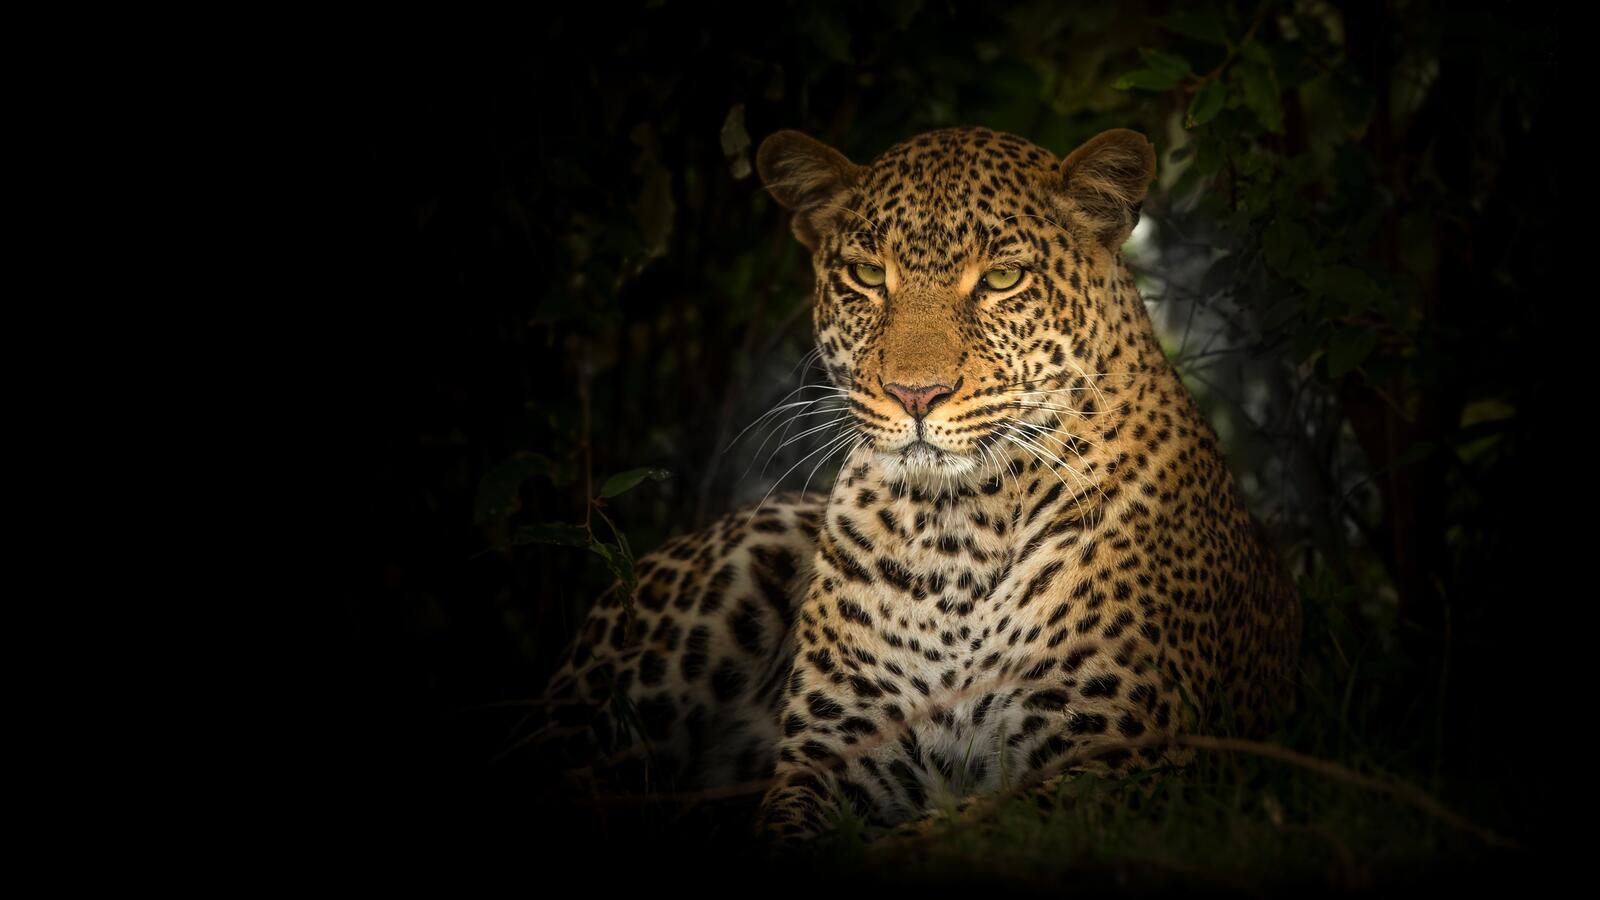 Wallpapers leopard big cat wildlife on the desktop